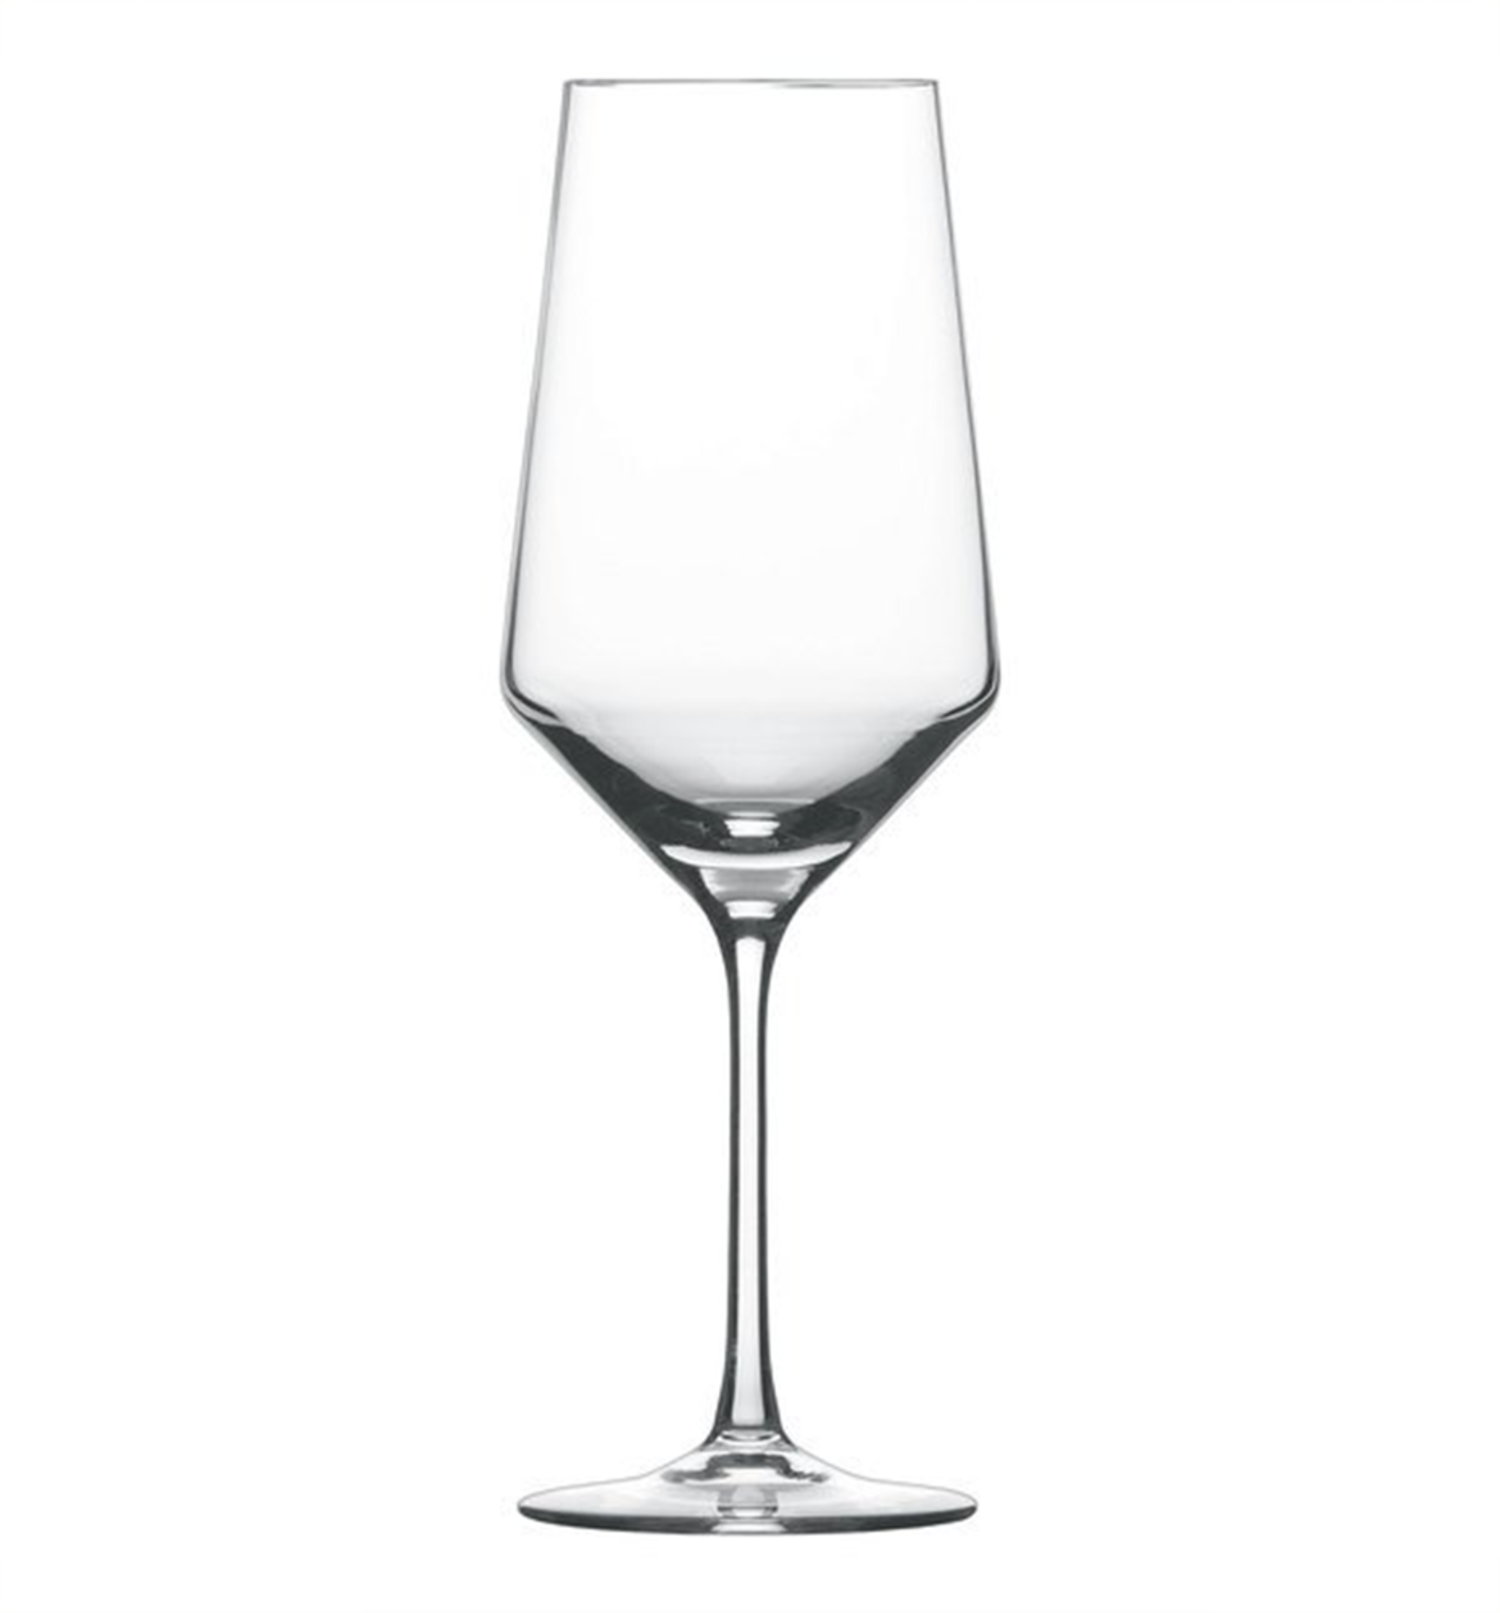 https://cdn.shoplightspeed.com/shops/633206/files/40813784/1500x4000x3/schott-zwiesel-schott-zwiesel-bordeax-wine-glasswa.jpg